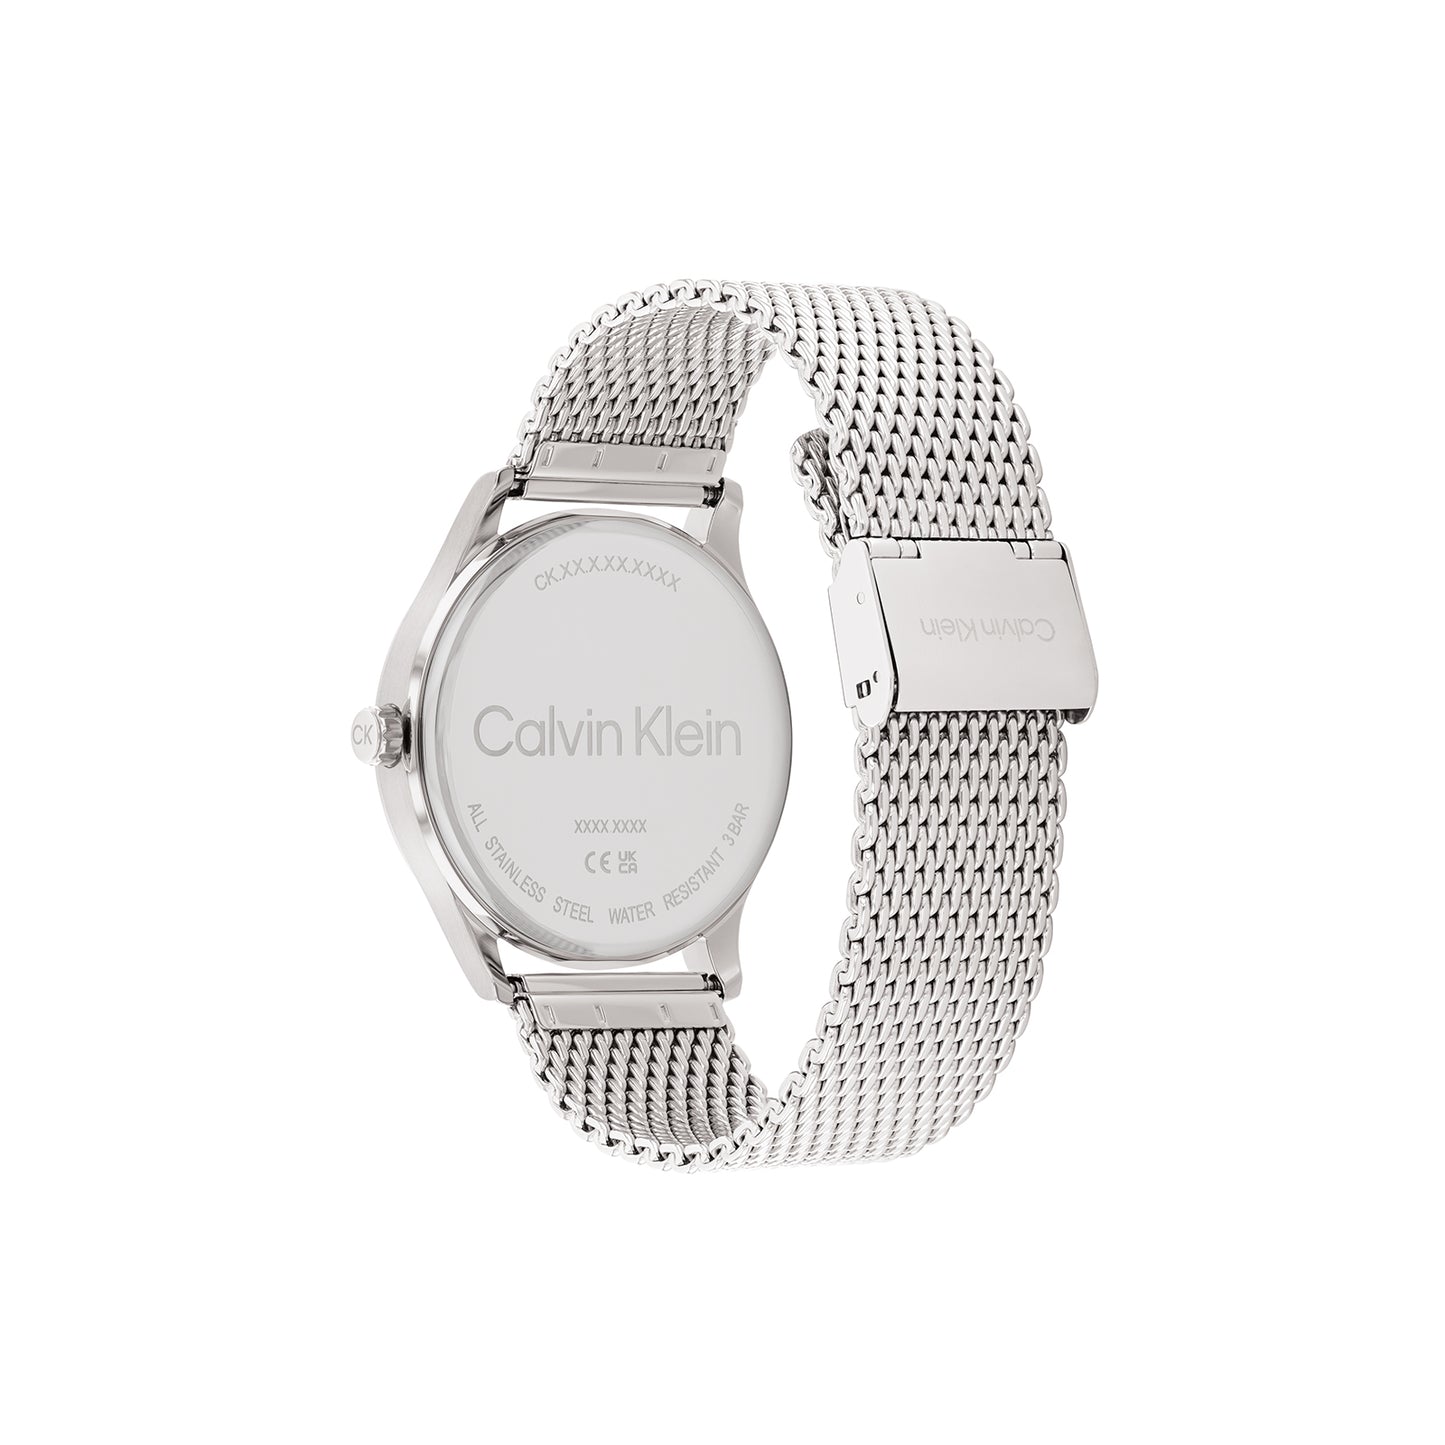 Calvin Klein 25200450 Men's Steel Mesh Watch